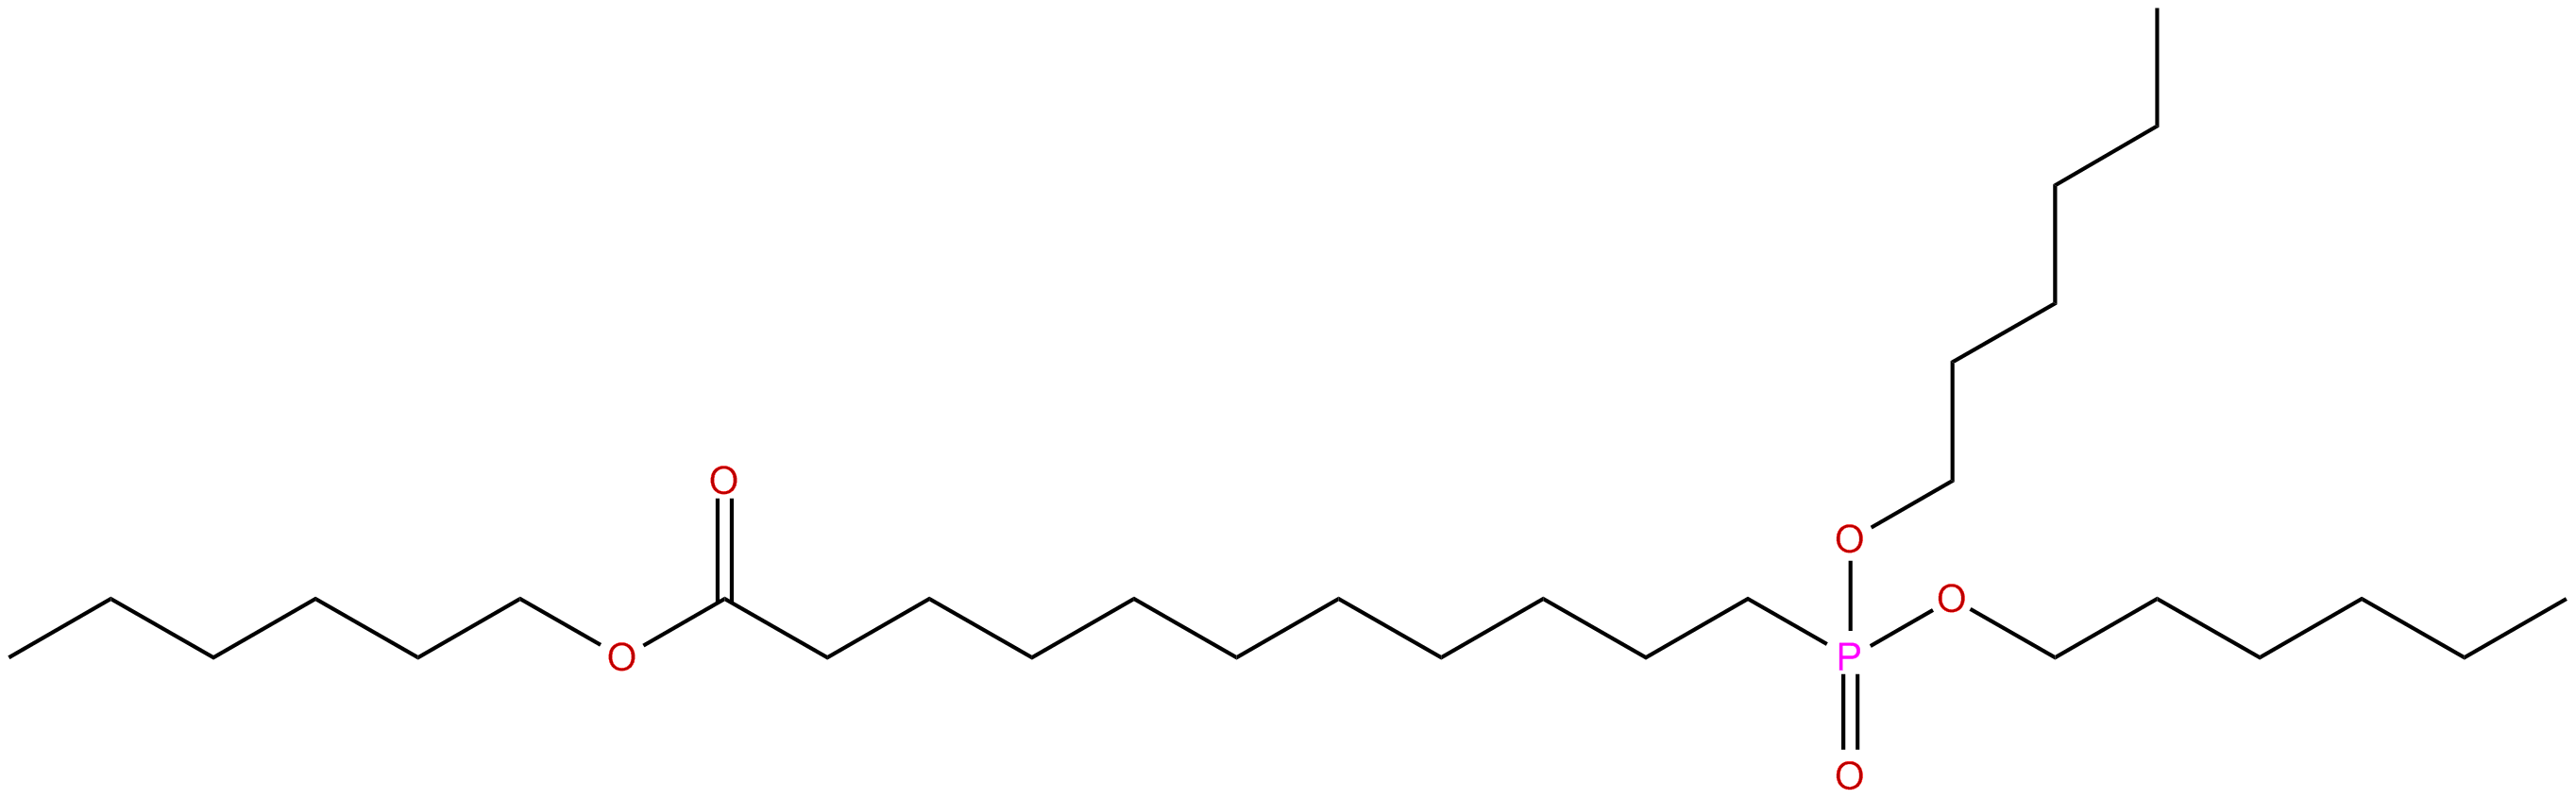 Image of undecanoic acid, 11-phosphono-, trihexyl ester